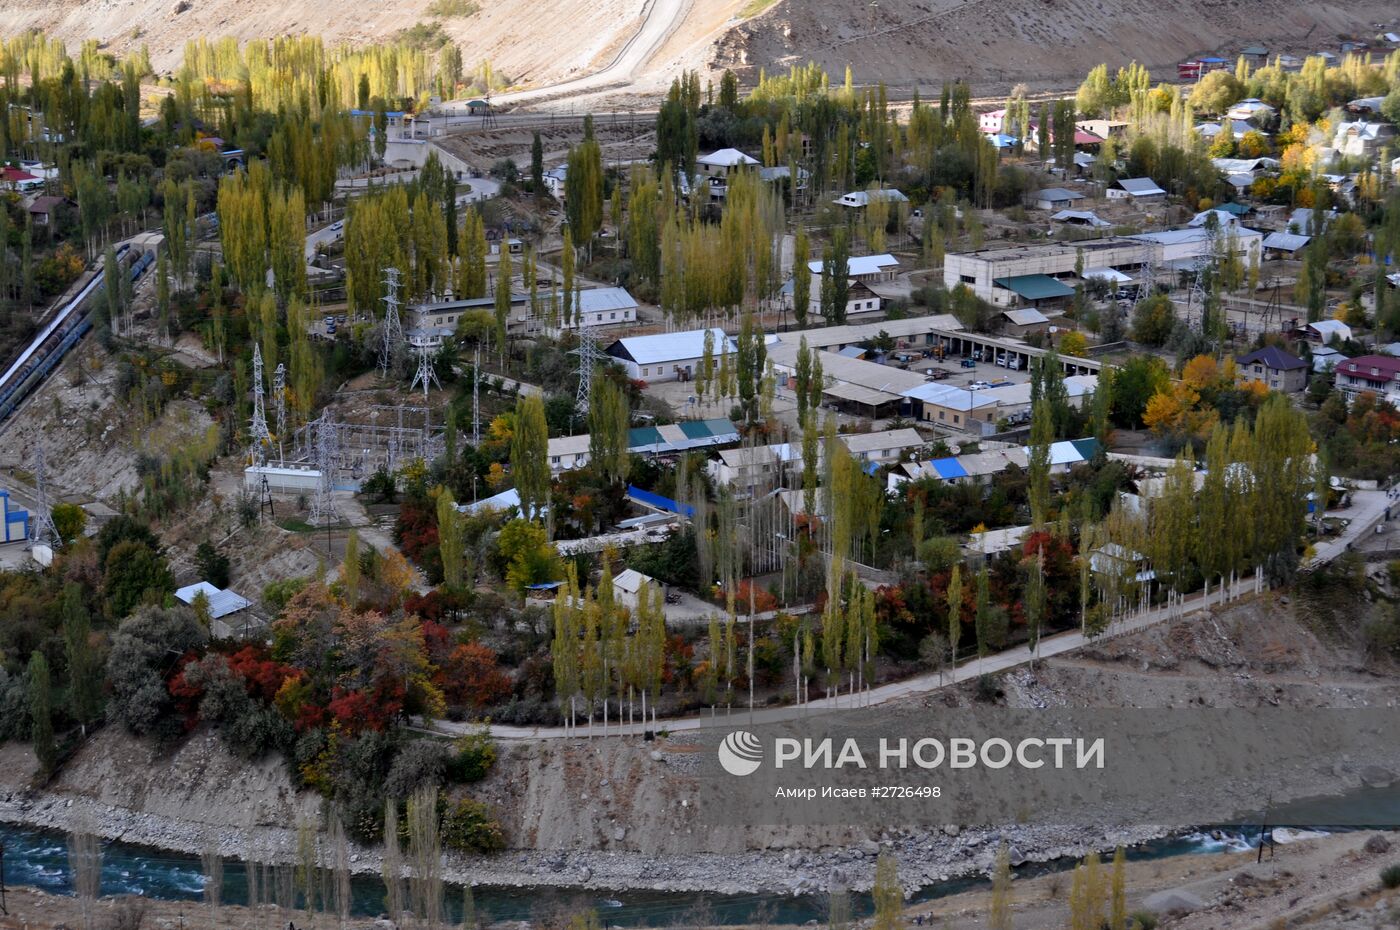 Таджикистан. Памир